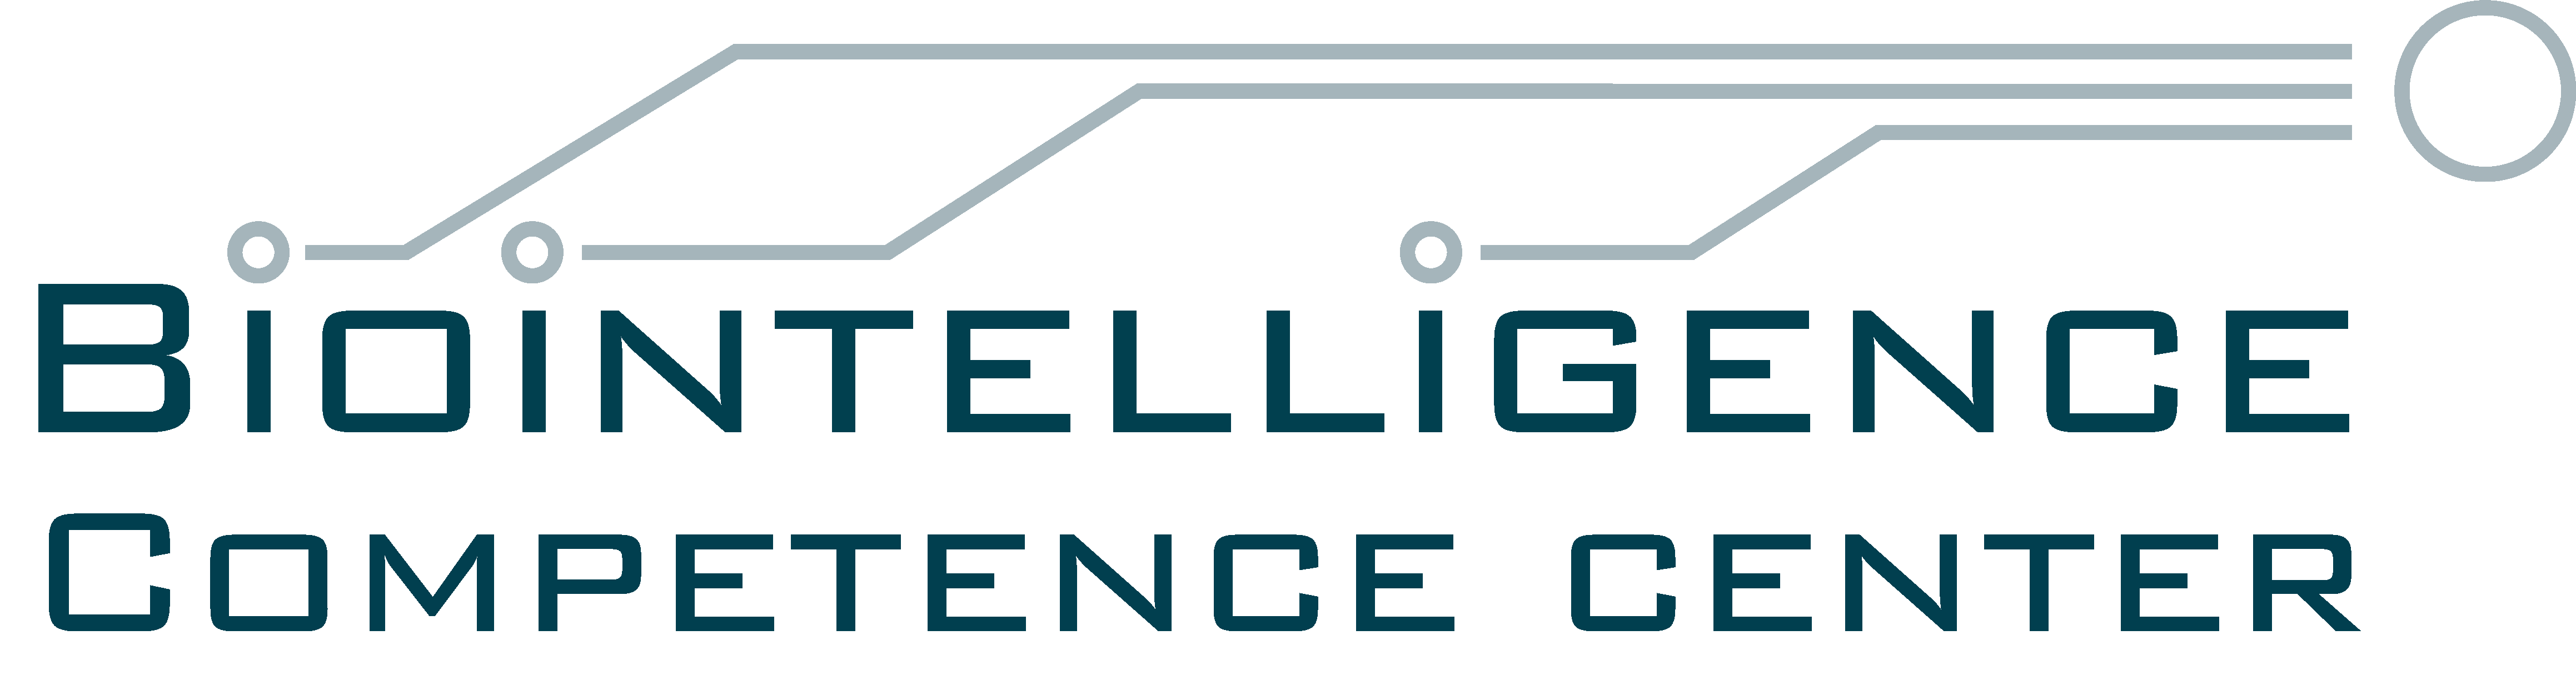 (c) Biointelligence-center.org